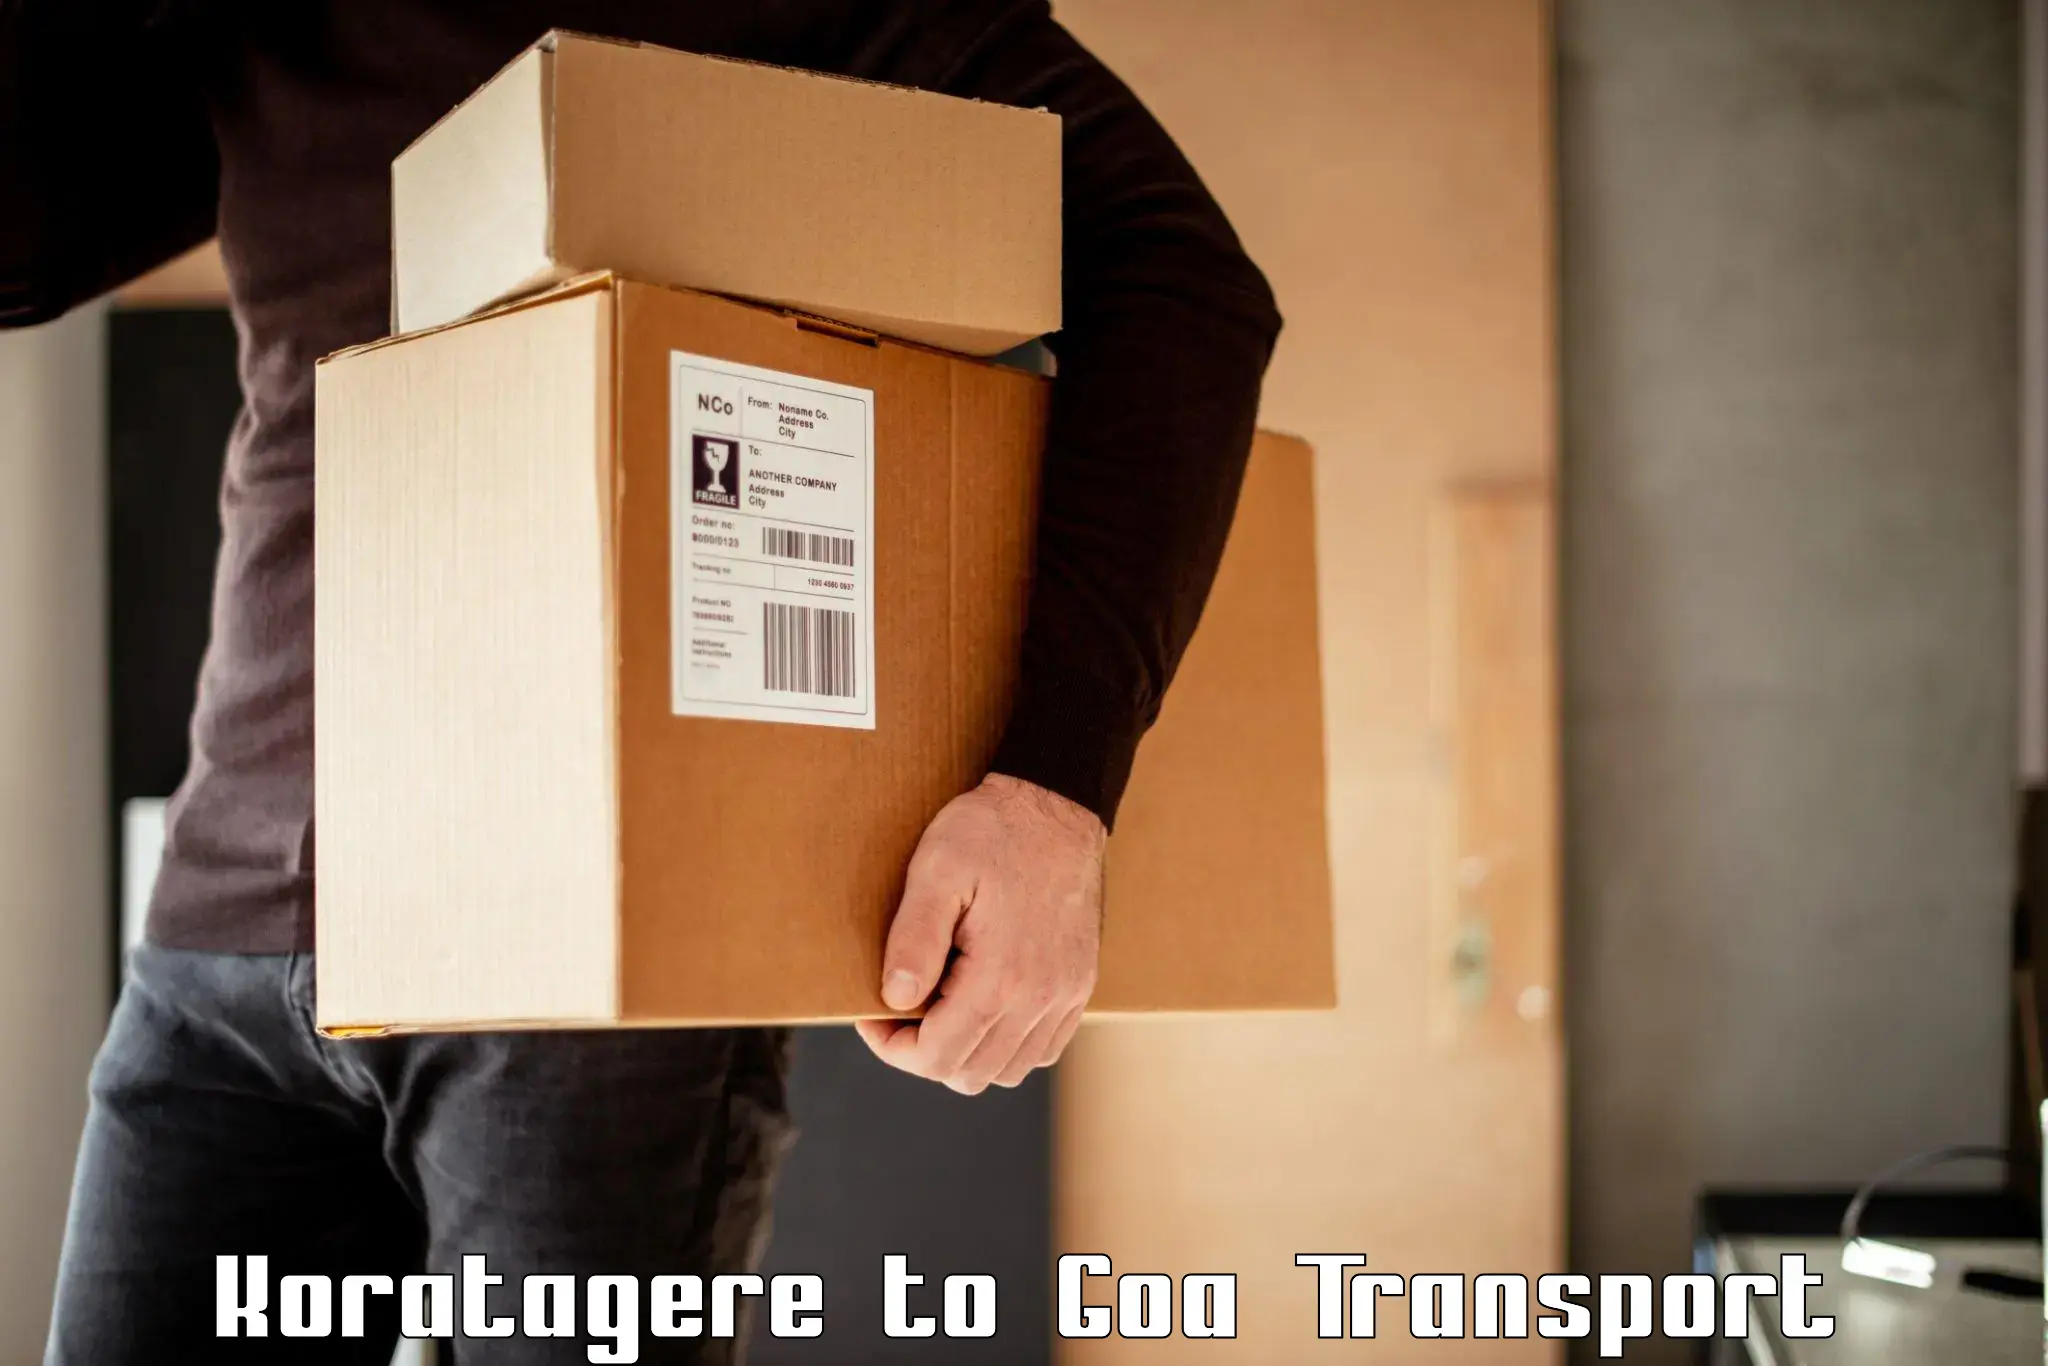 Lorry transport service Koratagere to Panjim